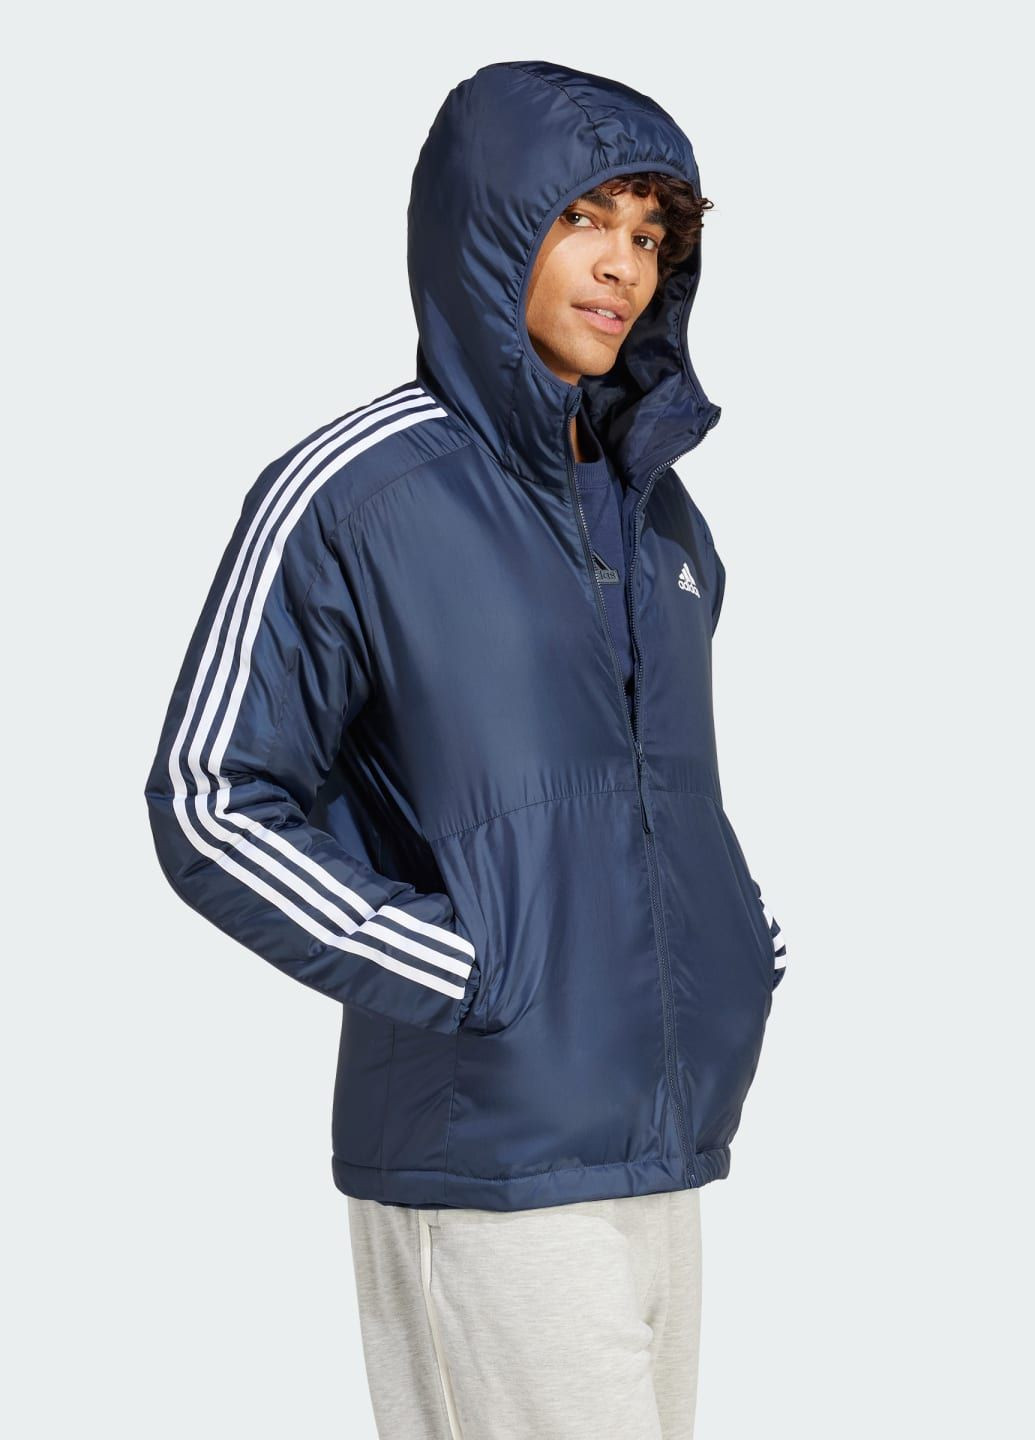 Синяя демисезонная куртка essentials 3-stripes insulated adidas